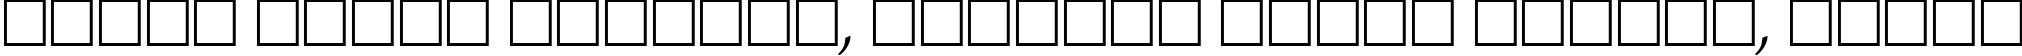 Пример написания шрифтом ZurichCalligraphic Italic текста на белорусском